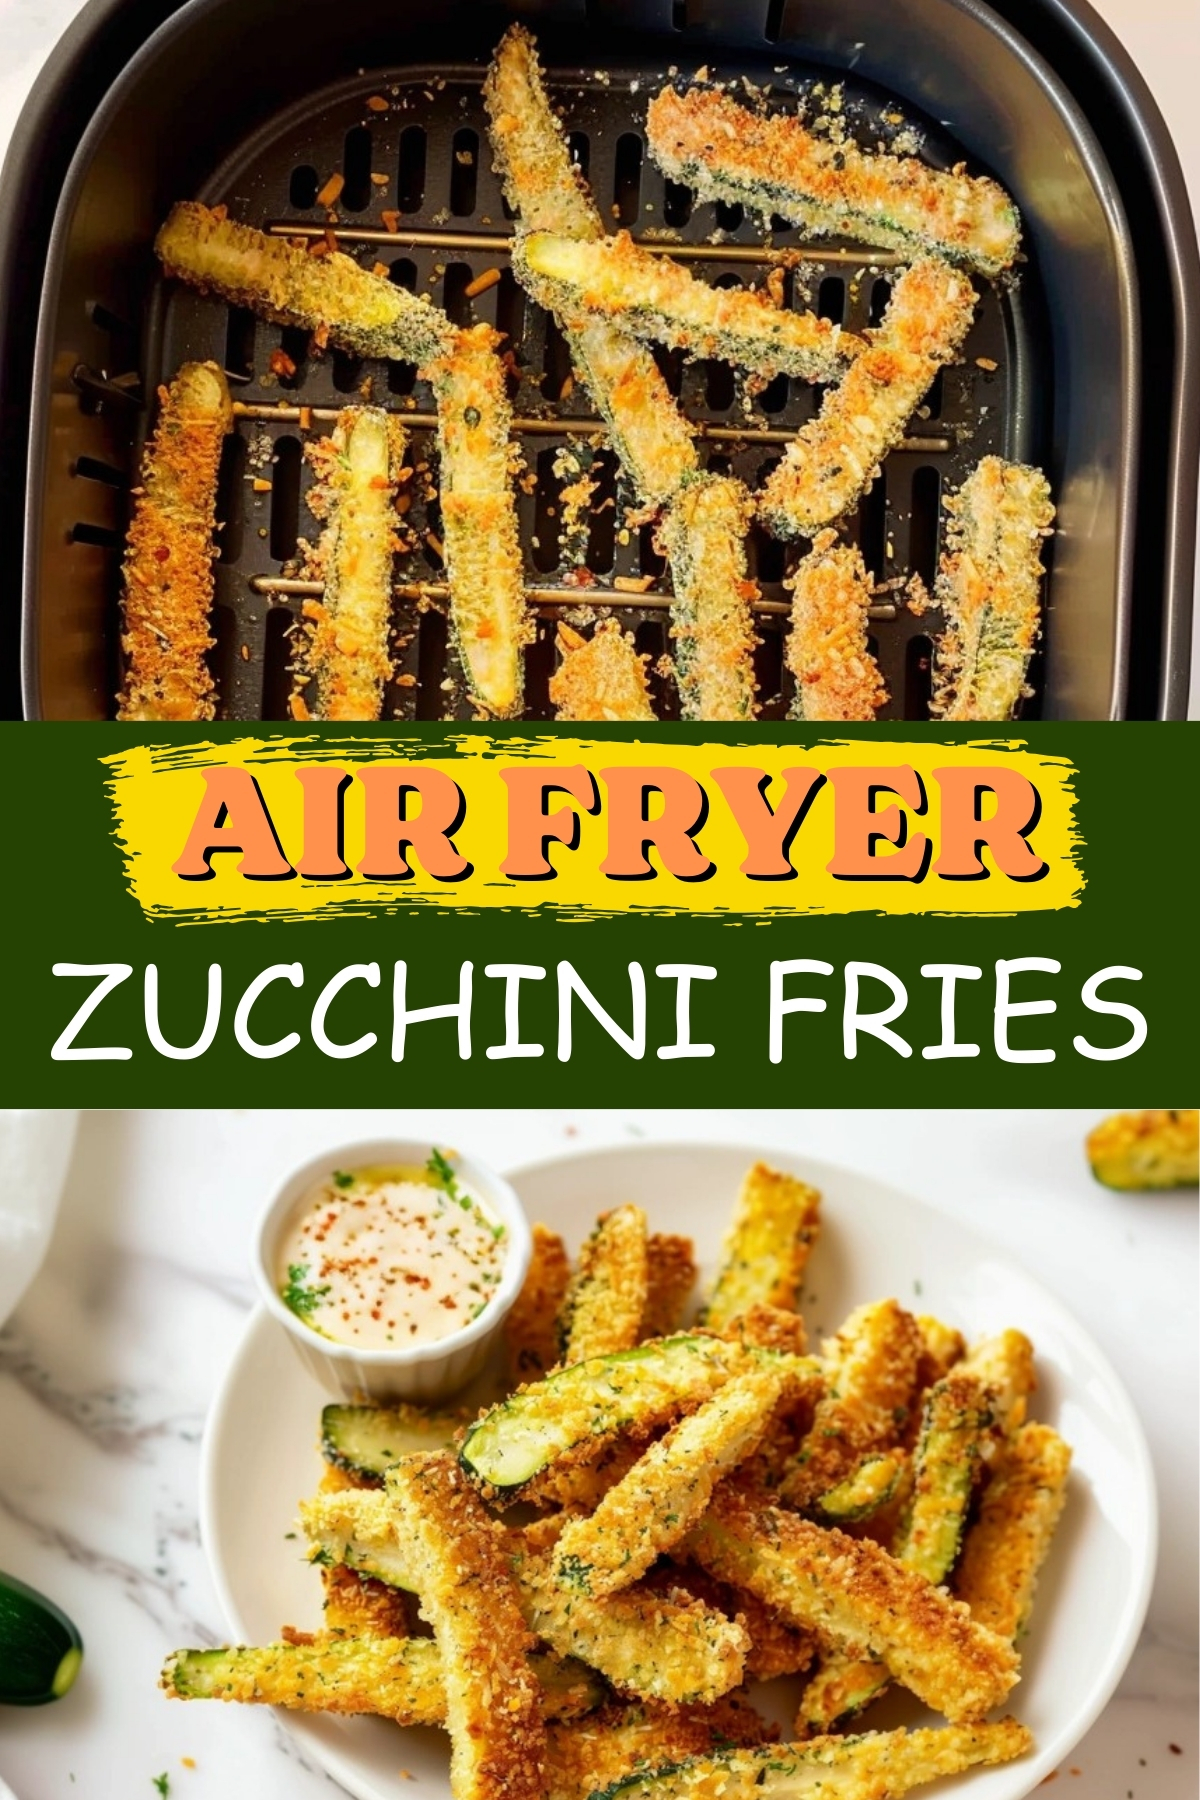 Air Fryer Zucchini Fries